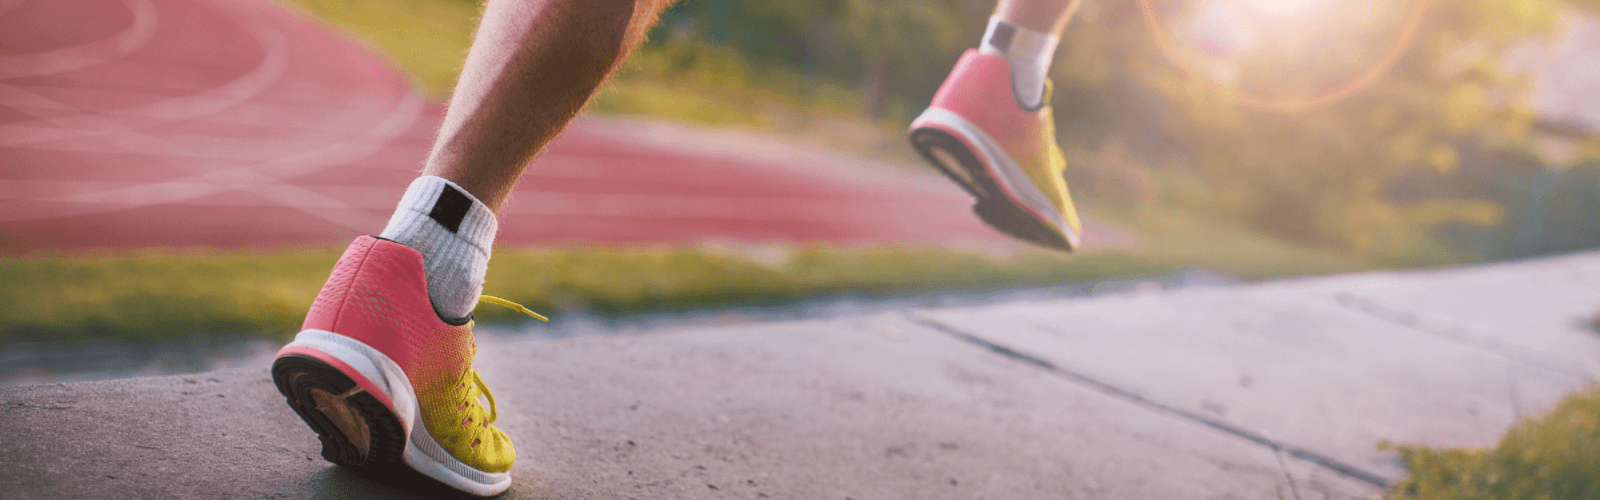 Diet Tips For Runners